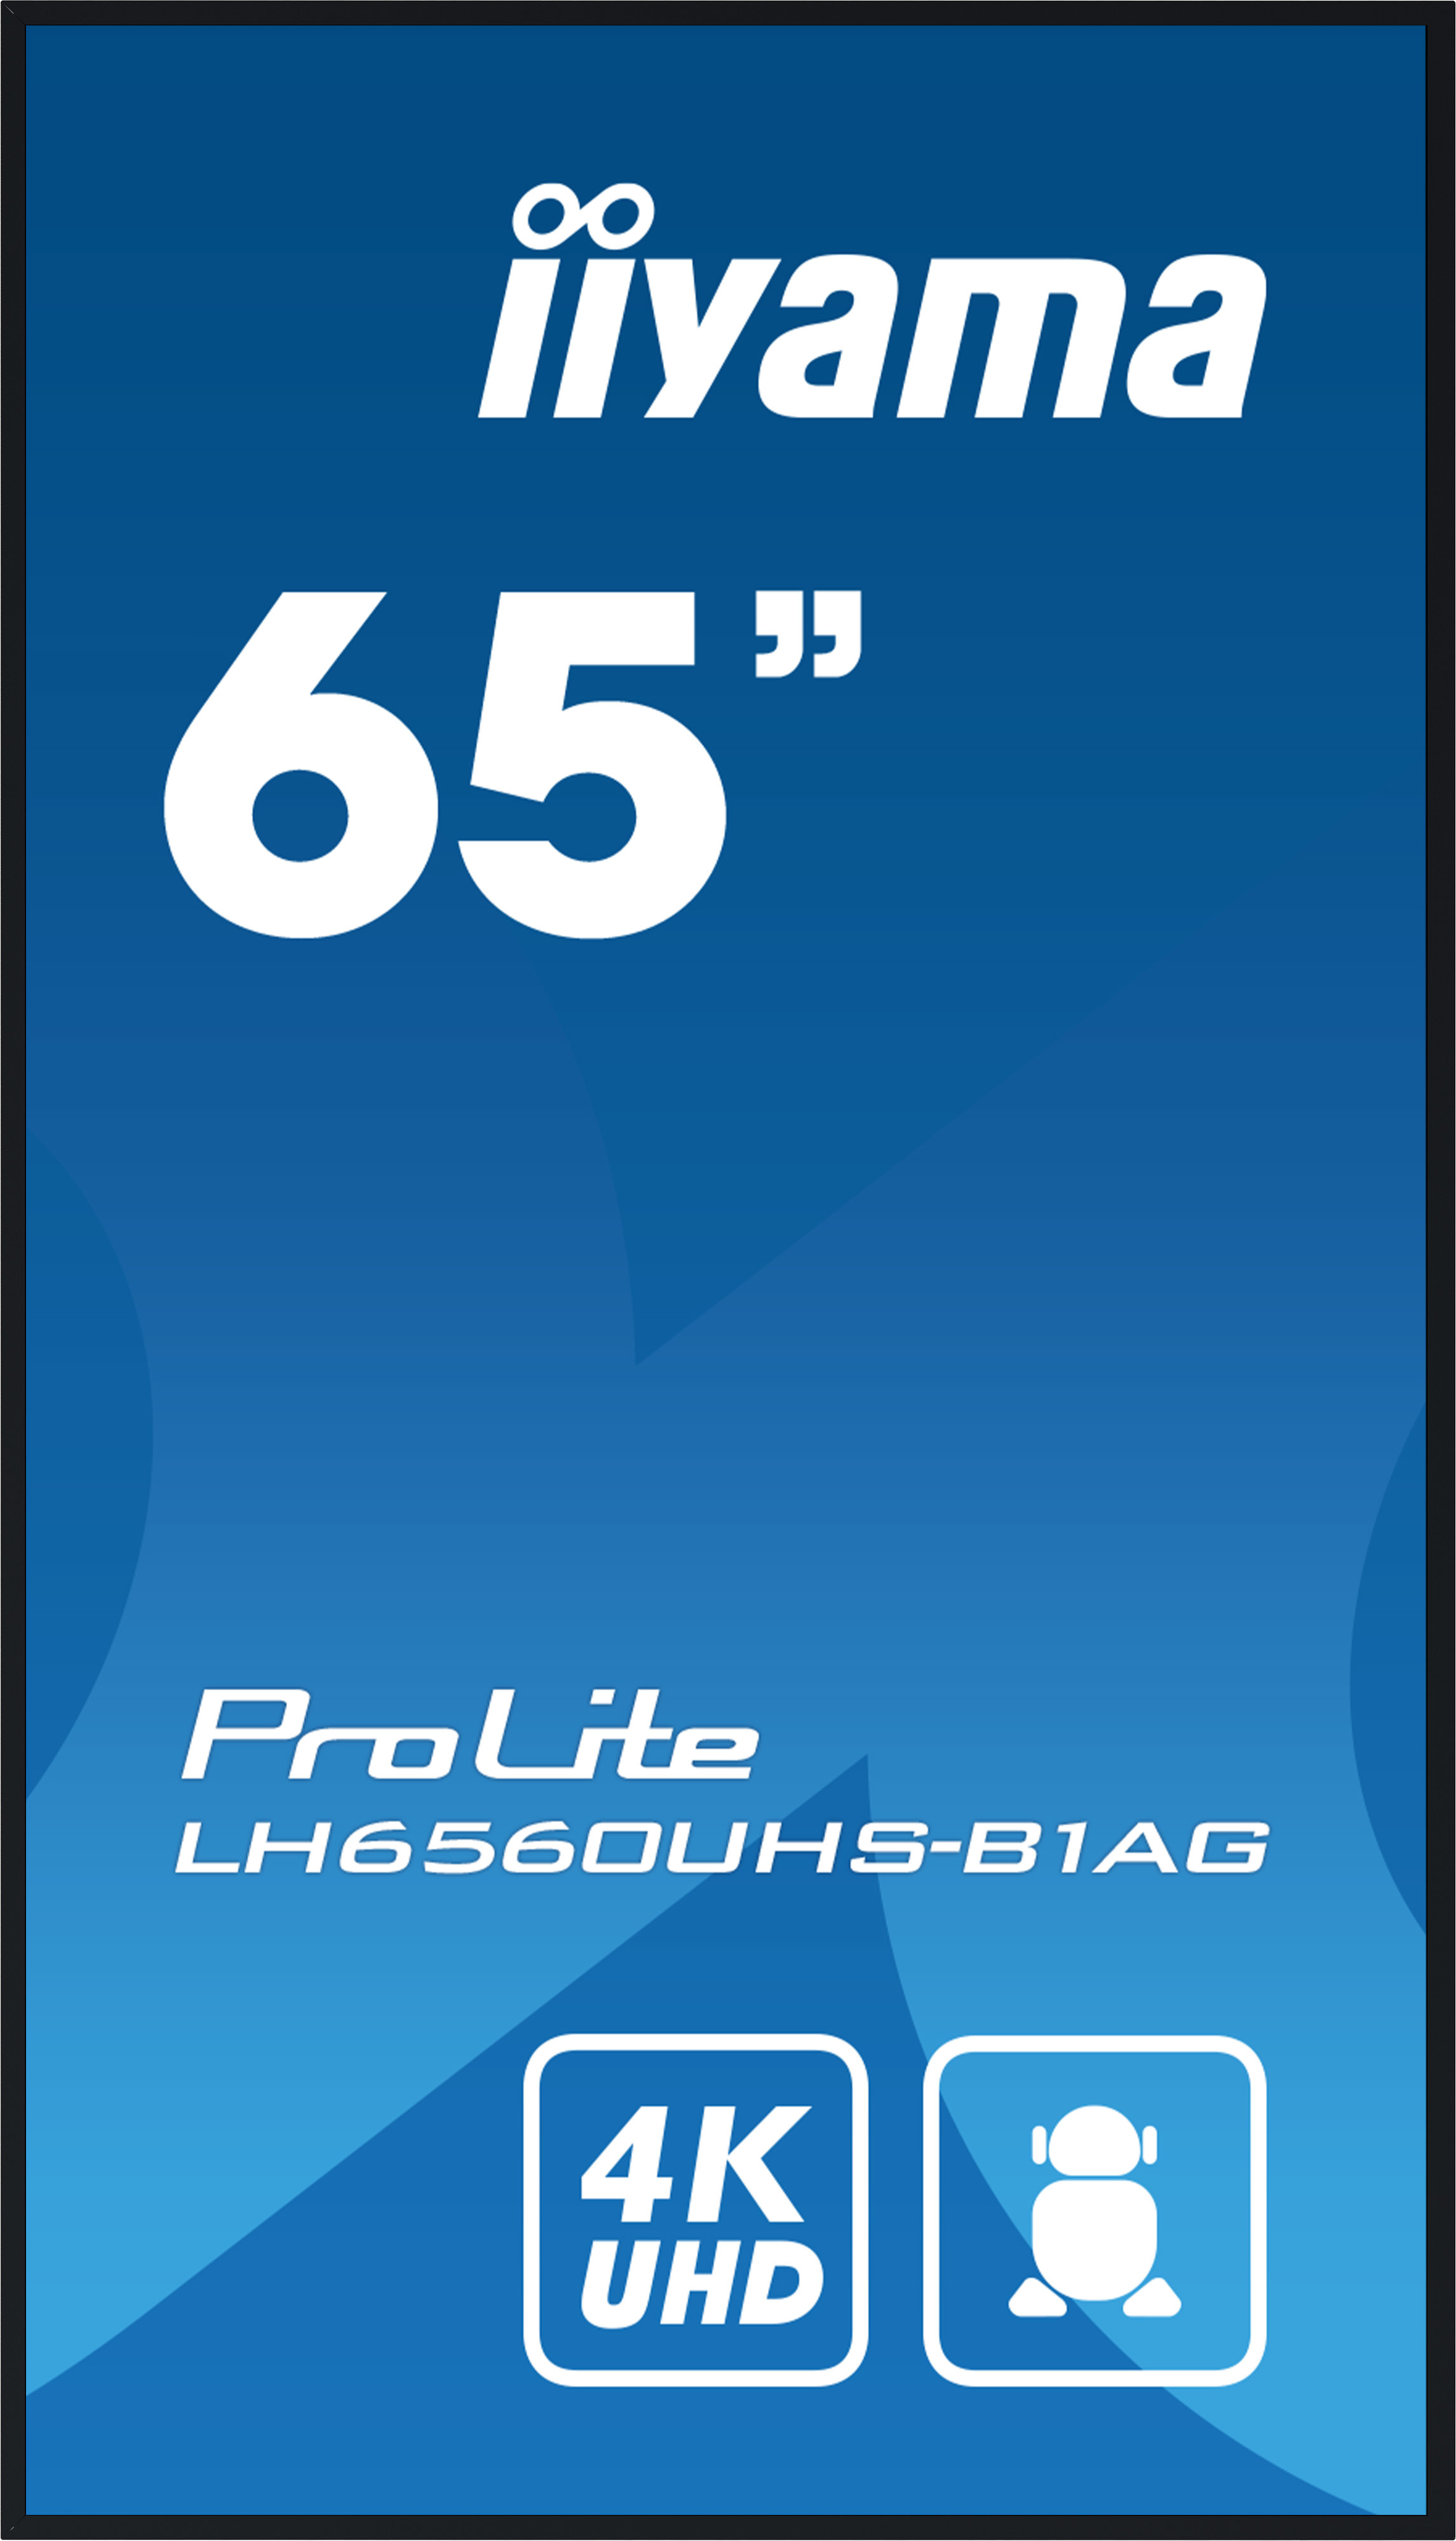 LH6560UHS-B1AG